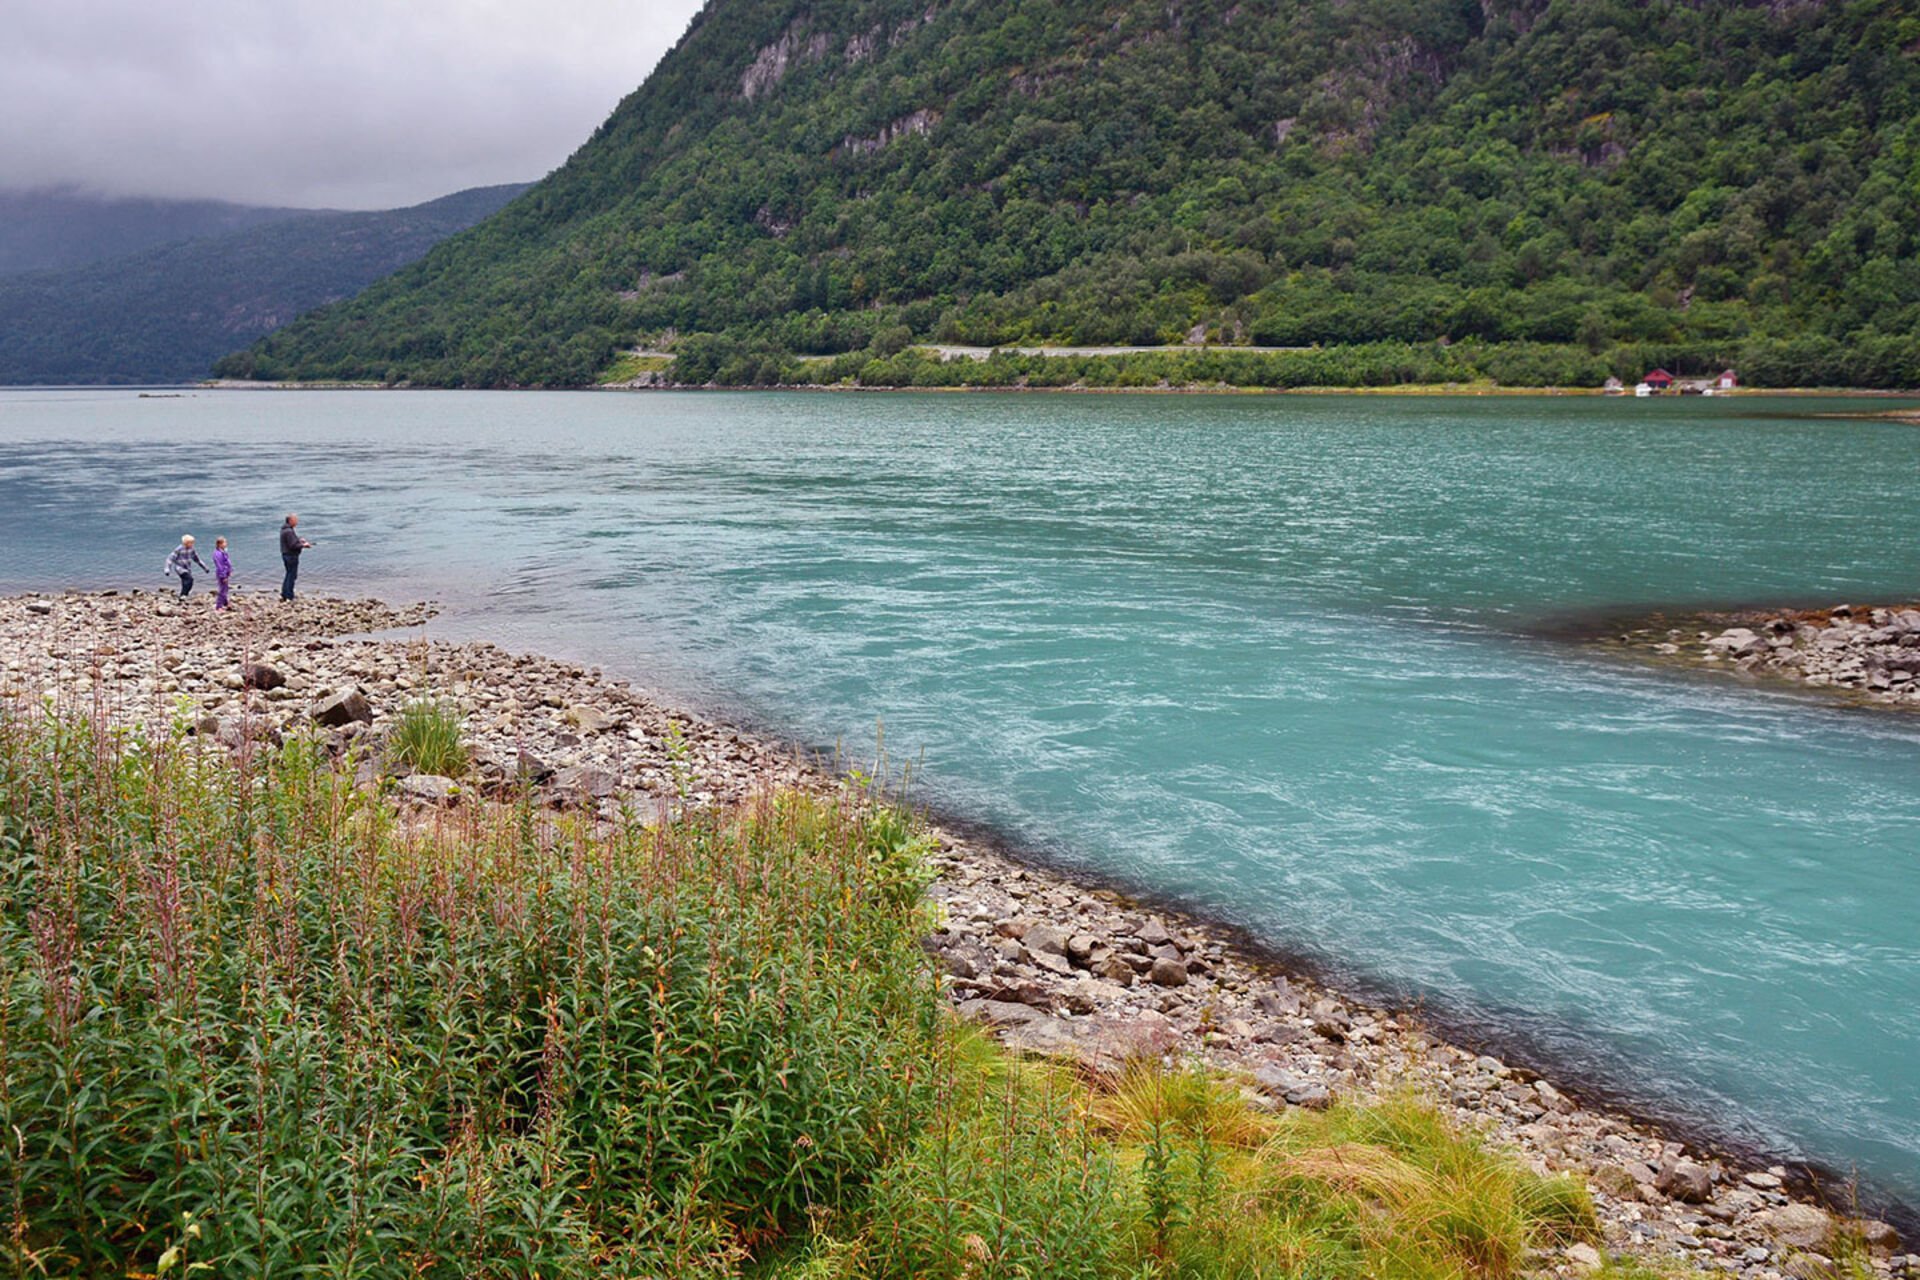  Solche Zuflüsse in den Fjord riechen förmlich nach Fisch.  